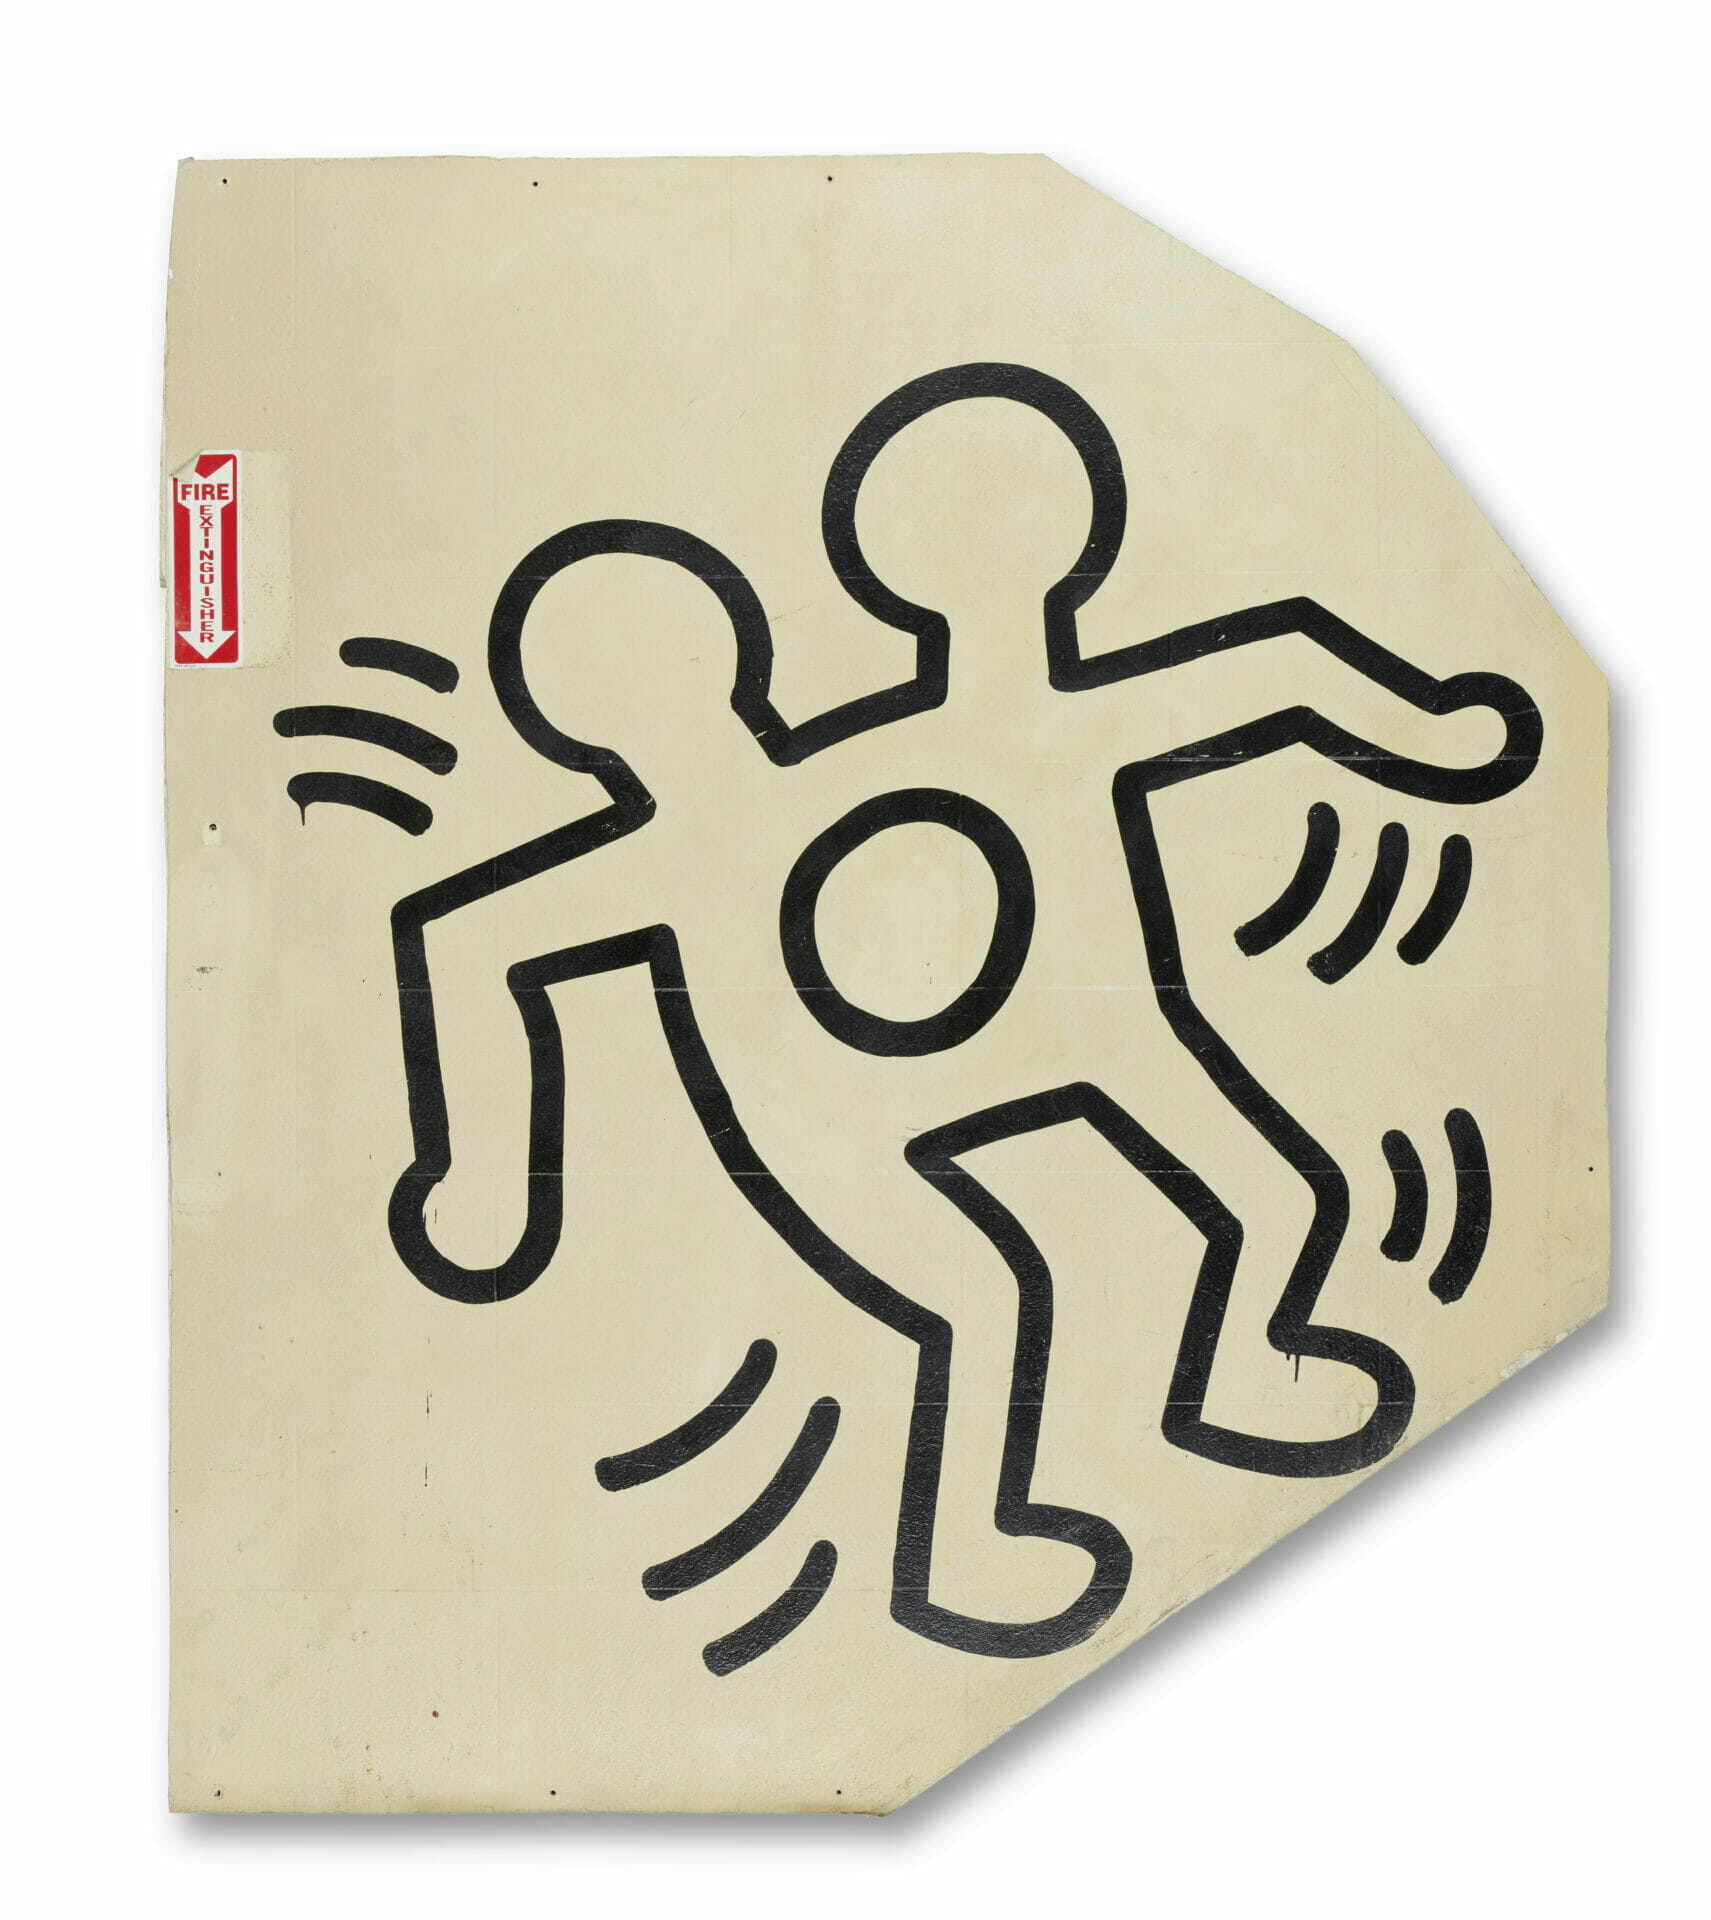 SCHUNCK Heerlen - Keith Haring